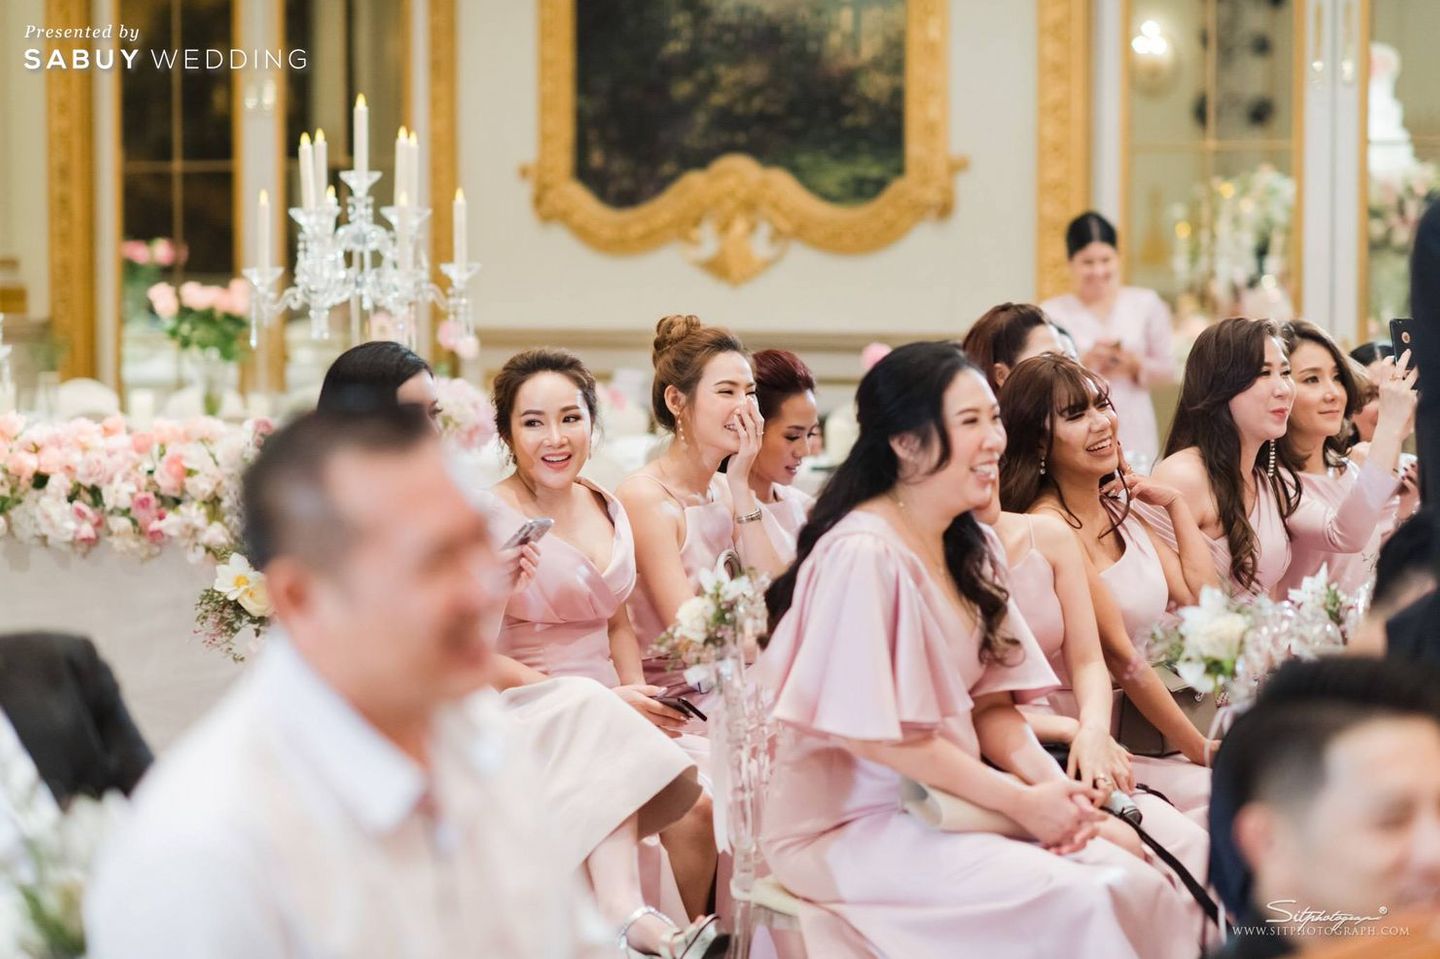 งานแต่งงาน,พิธีแต่งงานแบบไทย,ชุดเพื่อนเจ้าสาว,สถานที่แต่งงาน,โรงแรม,ตกแต่งงานแต่ง,จัดดอกไม้งานแต่ง รีวิวงานแต่งสุดอบอุ่นแห่งปี ‘We are Family’ งานนี้ห้อมล้อมด้วยรัก @Mandarin Oriental